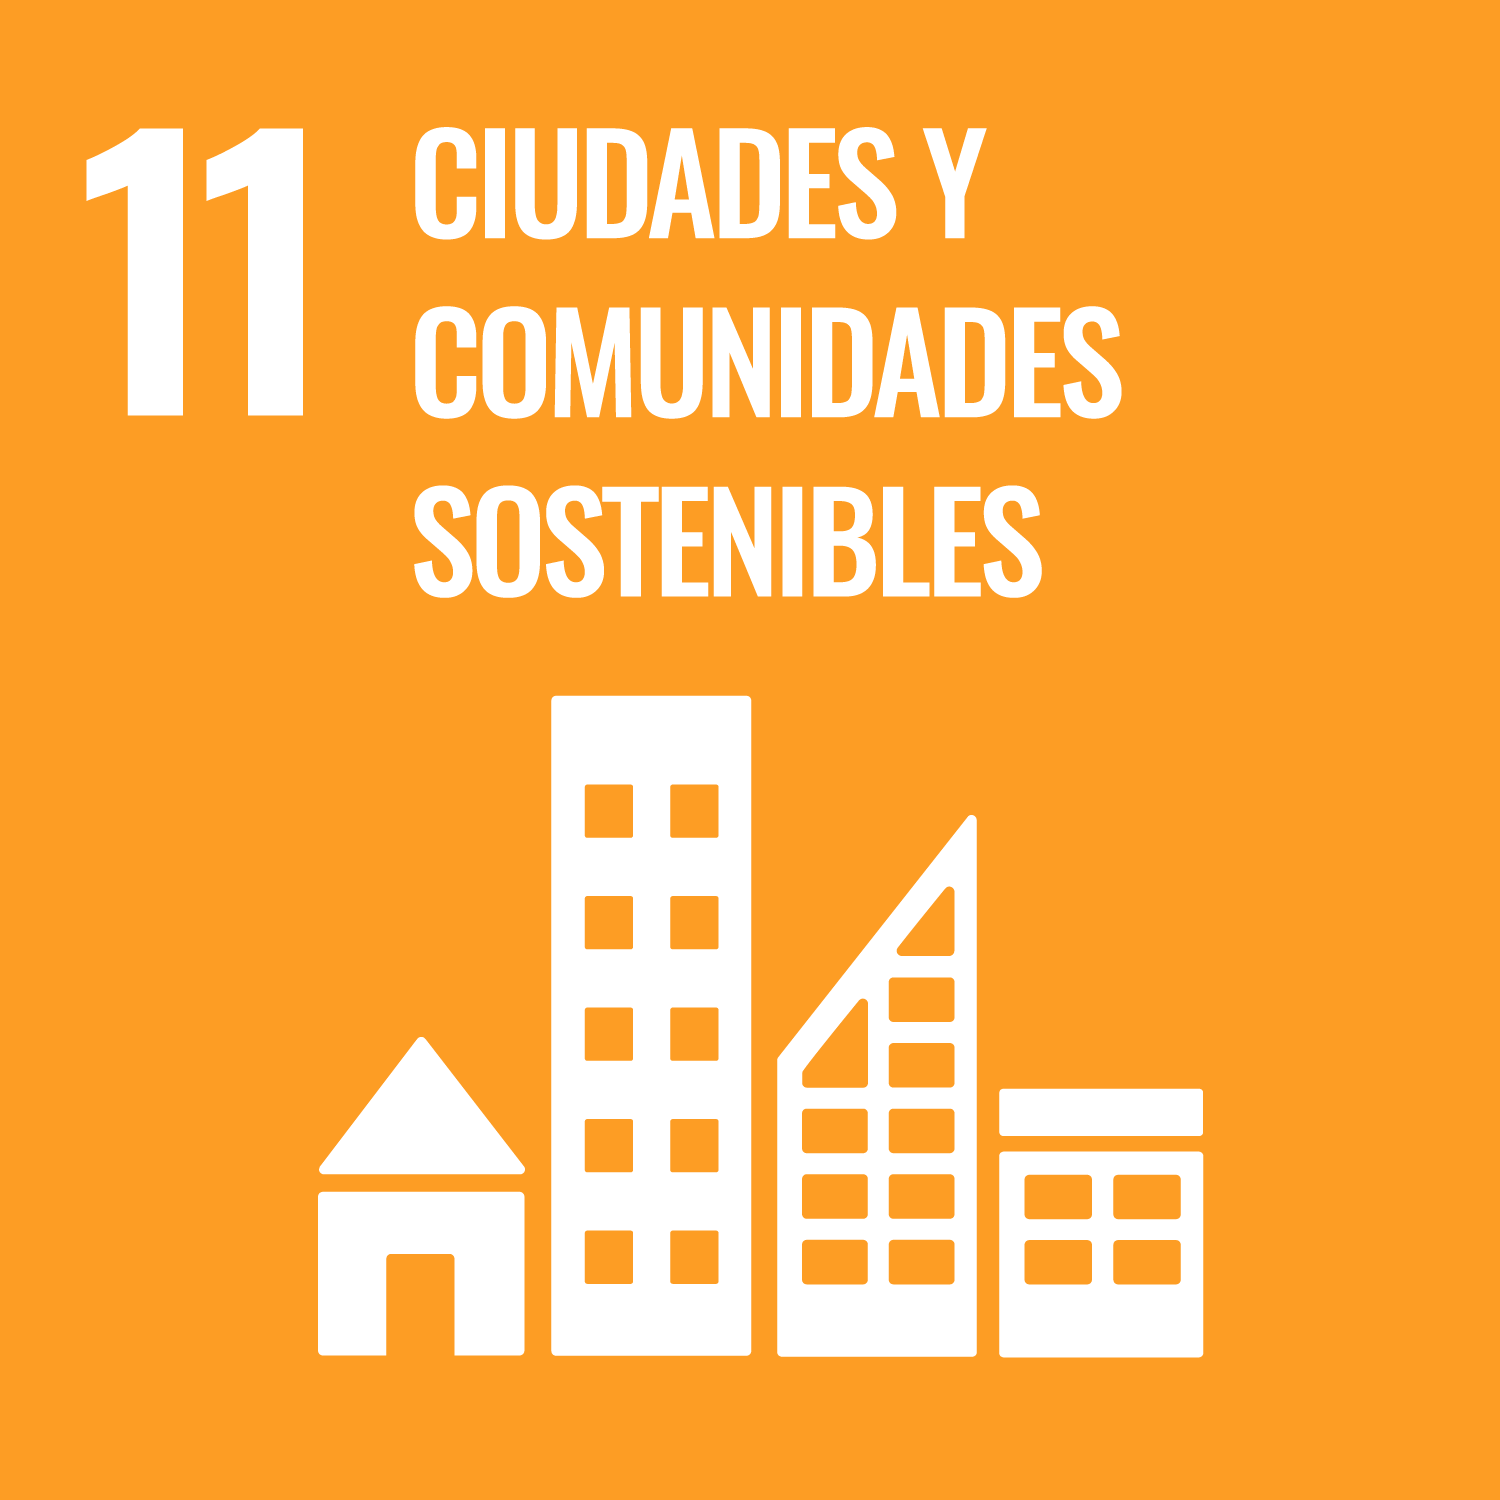 Objetivos de Desarrollo Sostenible número 11, ciudades y comunidades sostenibles